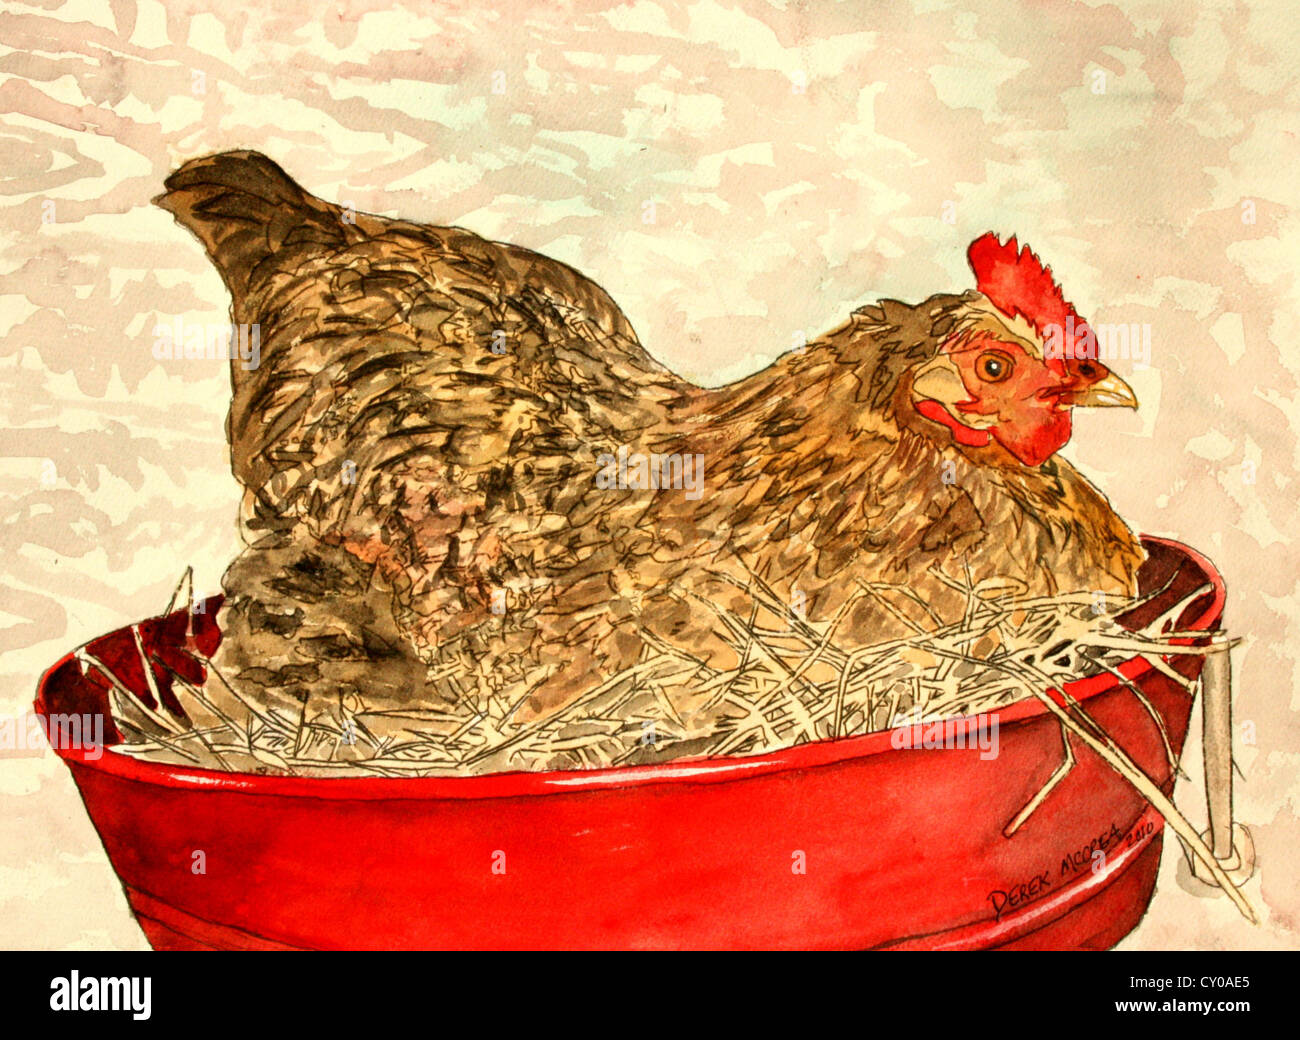 Animaux de ferme poule poulet illustration peinture Banque D'Images